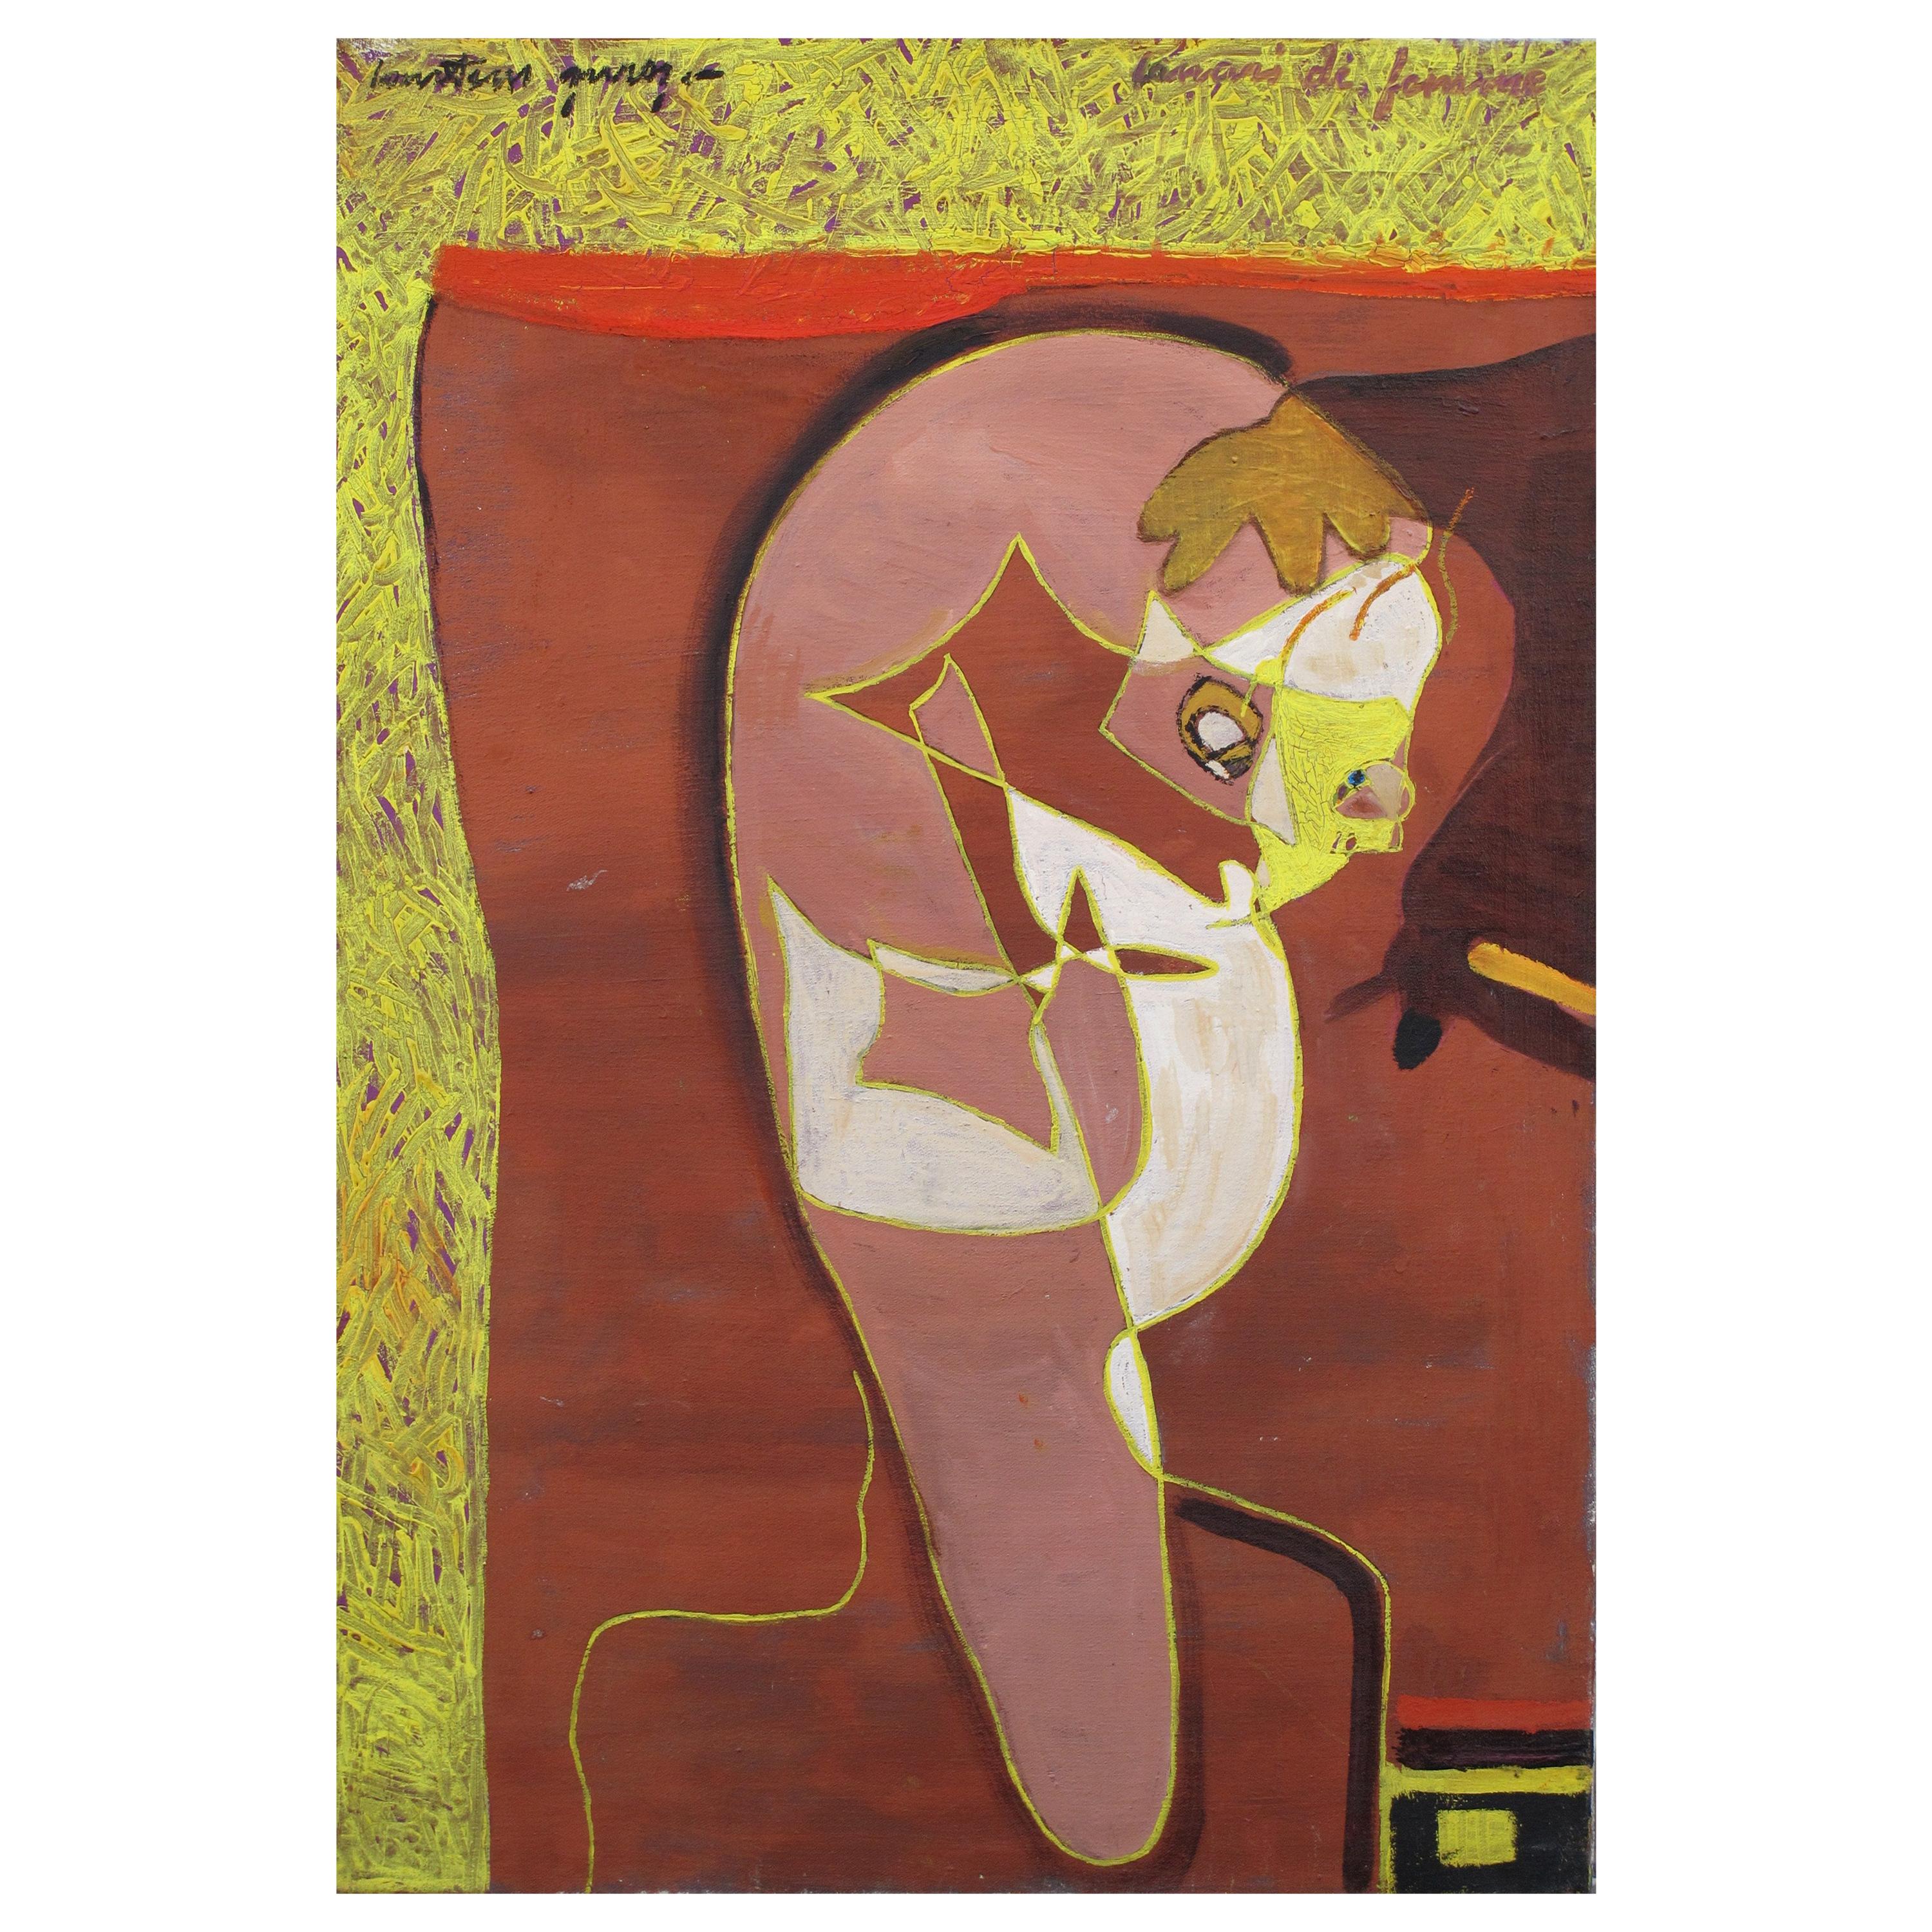 Painting "Croquis de femme" by Pierre Courtens, 1921-2004